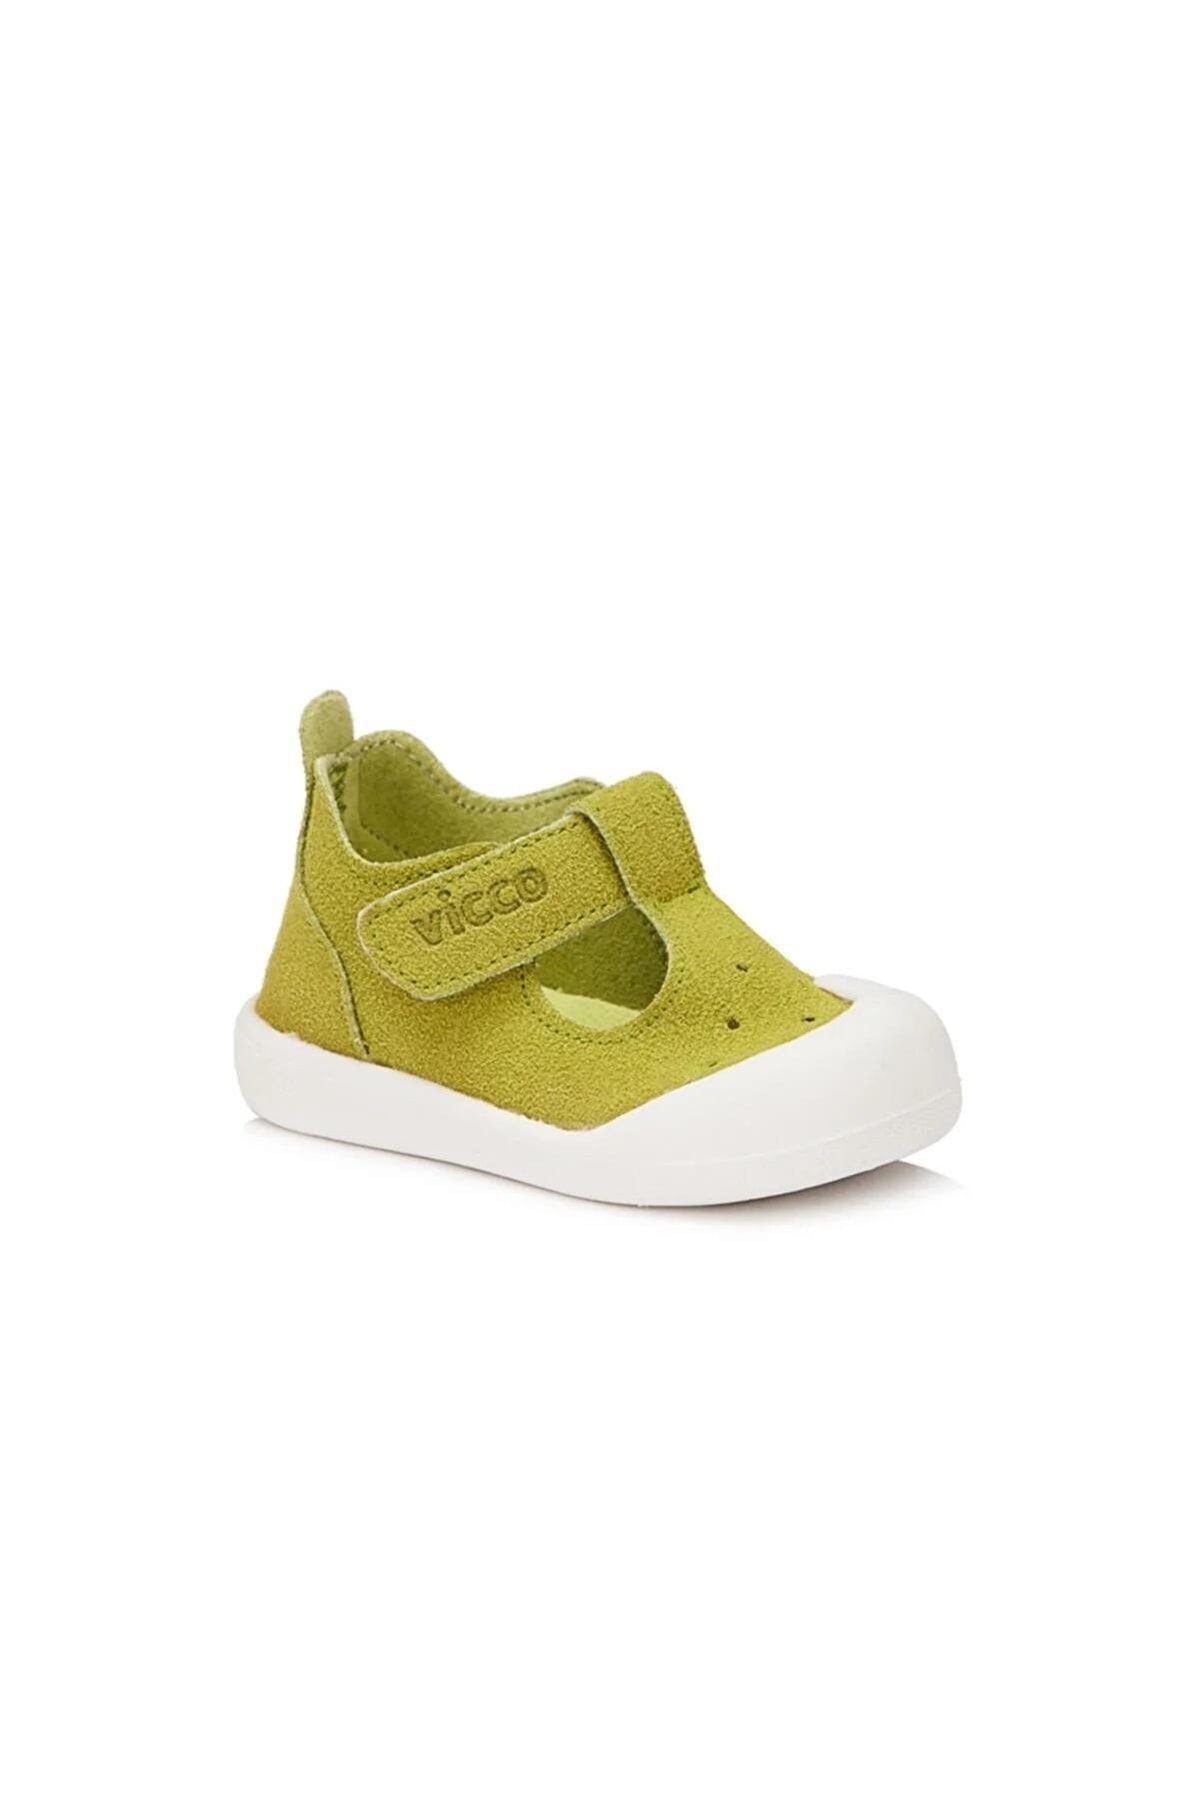 Vicco Loro Yeşil Ilk Adım Bebek Ayakkabı